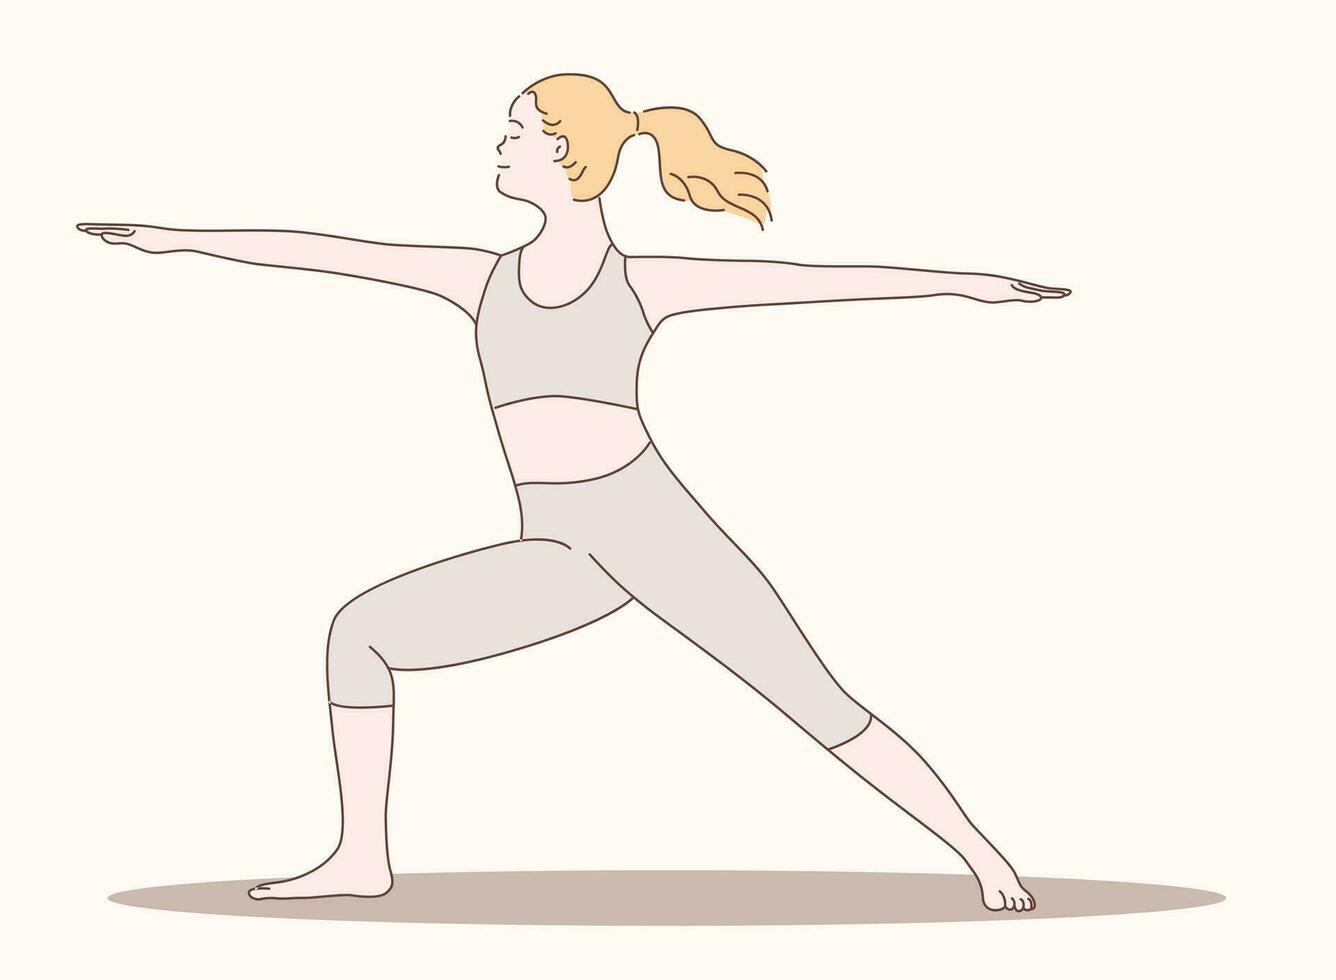 donna yoga vettore illustrazione mano disegnato